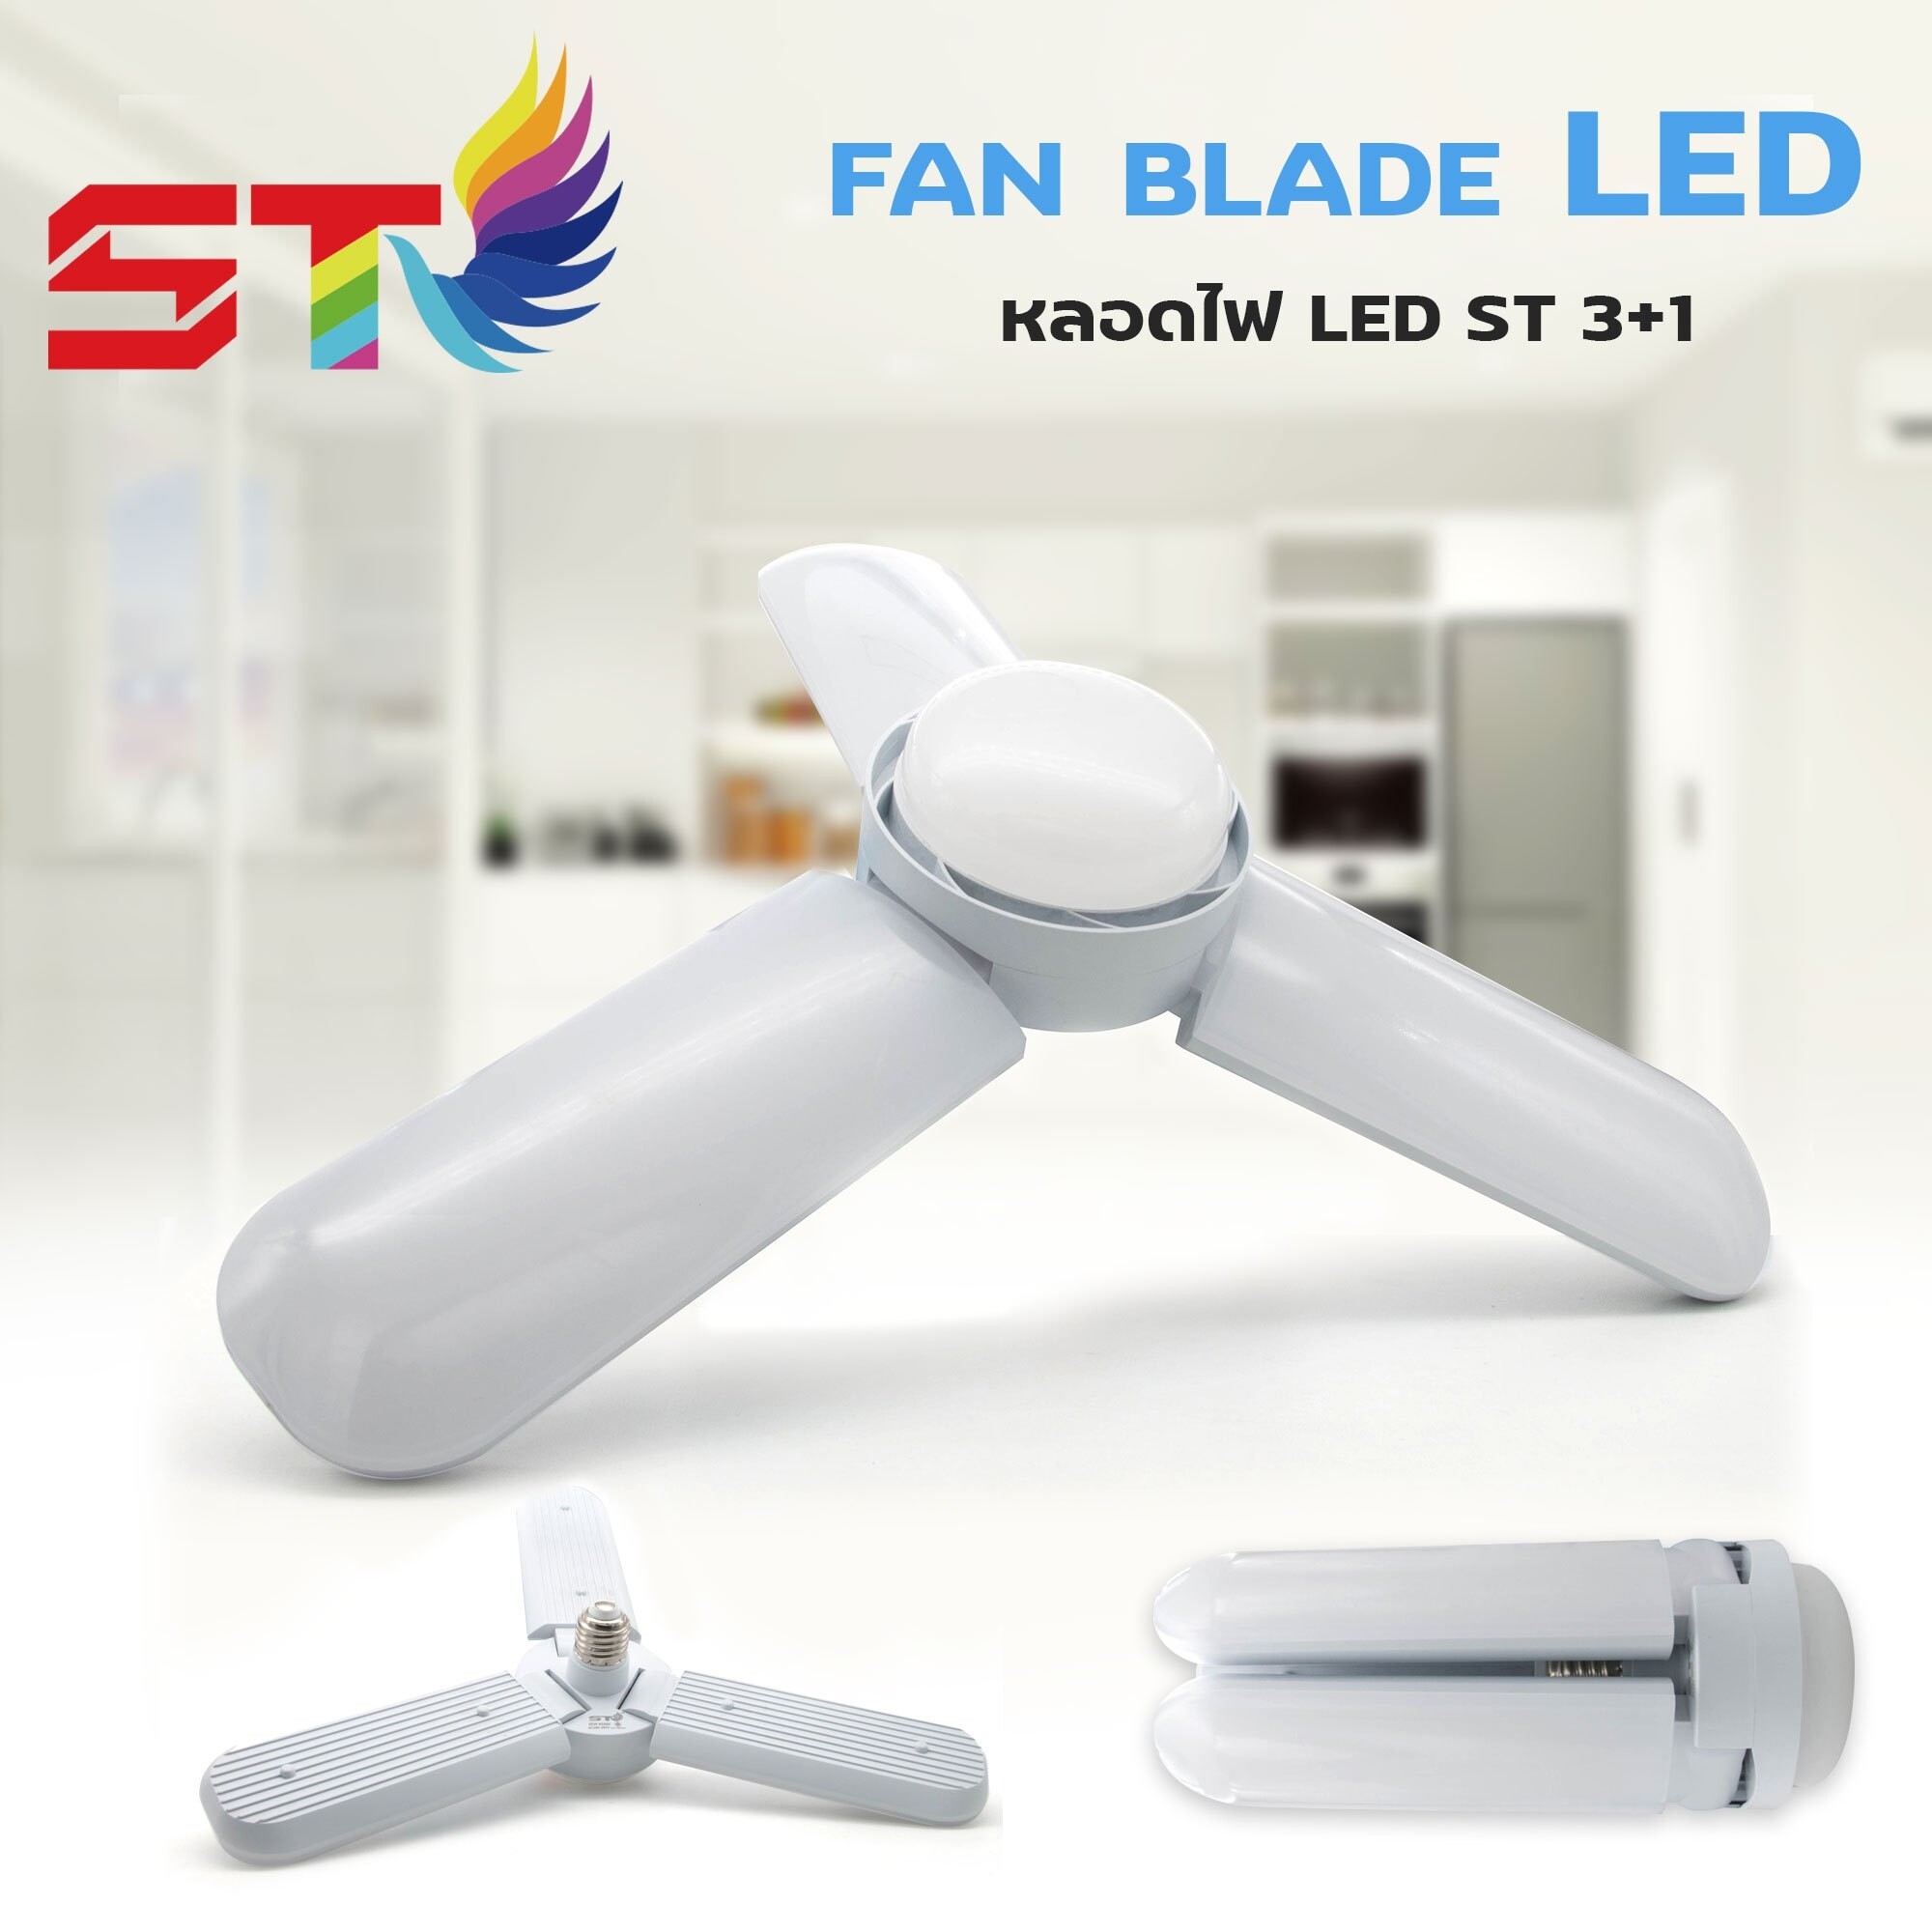 หลอดไฟ LED แสงขาว/แสงเหลือง หลอดไฟทรงใบพัด พับได้ Fan Blade LED Bulb 3ใบ+ช็อตยุง/3ใบ+อีก1ดวงไฟ65W /4ใบ+1อีก1ดวงไฟ85Wแสงขาว/เหลือง รุ่น Fan Blade LED Bulb สี 3+1ใบ -65W สี 3+1ใบ -65W